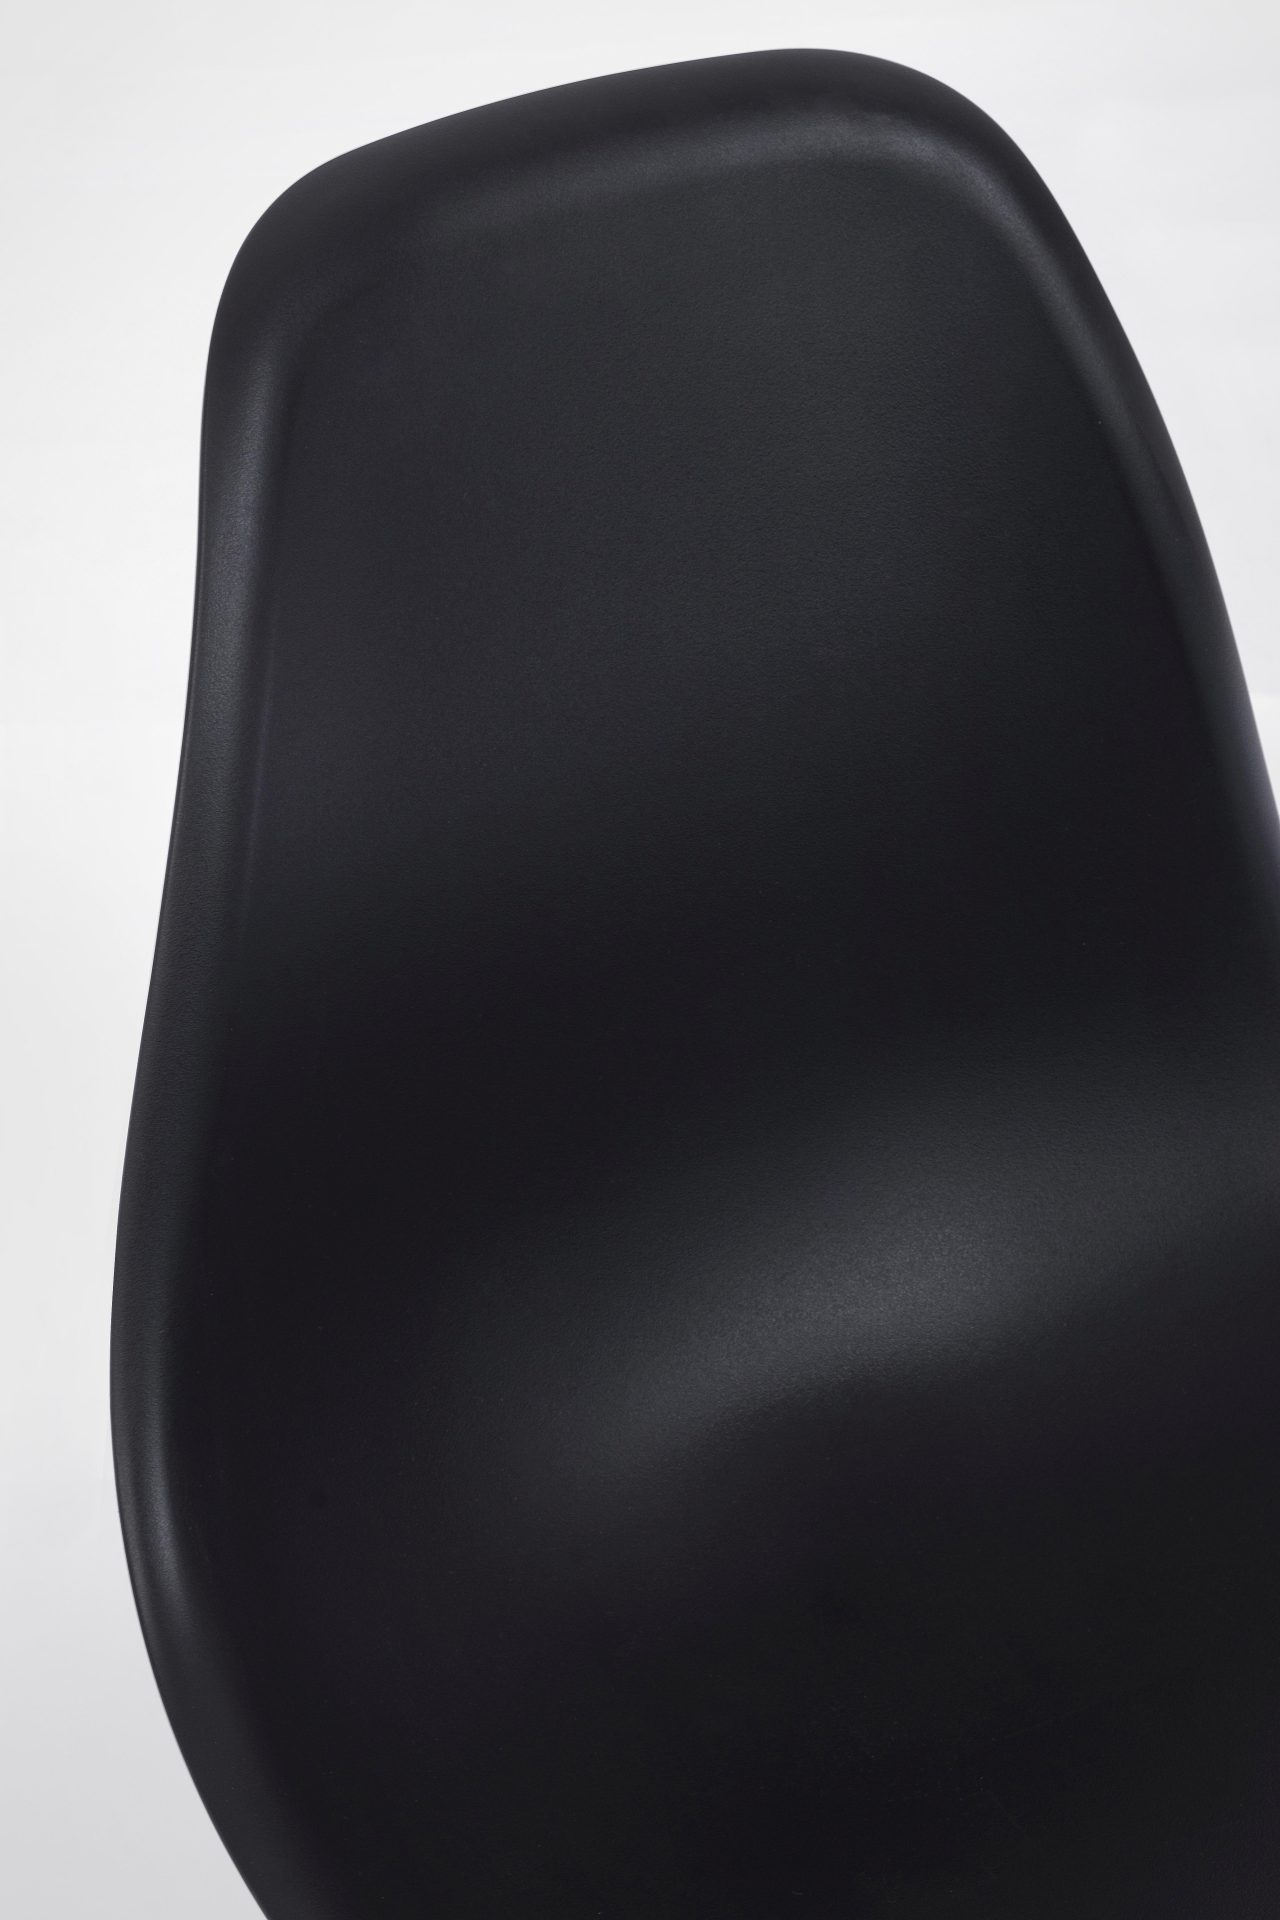 Der Stuhl Mandy überzeugt mit seinem modernem Design. Gefertigt wurde der Stuhl aus Kunststoff, welcher einen schwarzen Farbton besitzt. Das Gestell ist aus Metall, welches eine Holz-Optik besitzt. Die Sitzhöhe des Stuhls ist 45 cm.